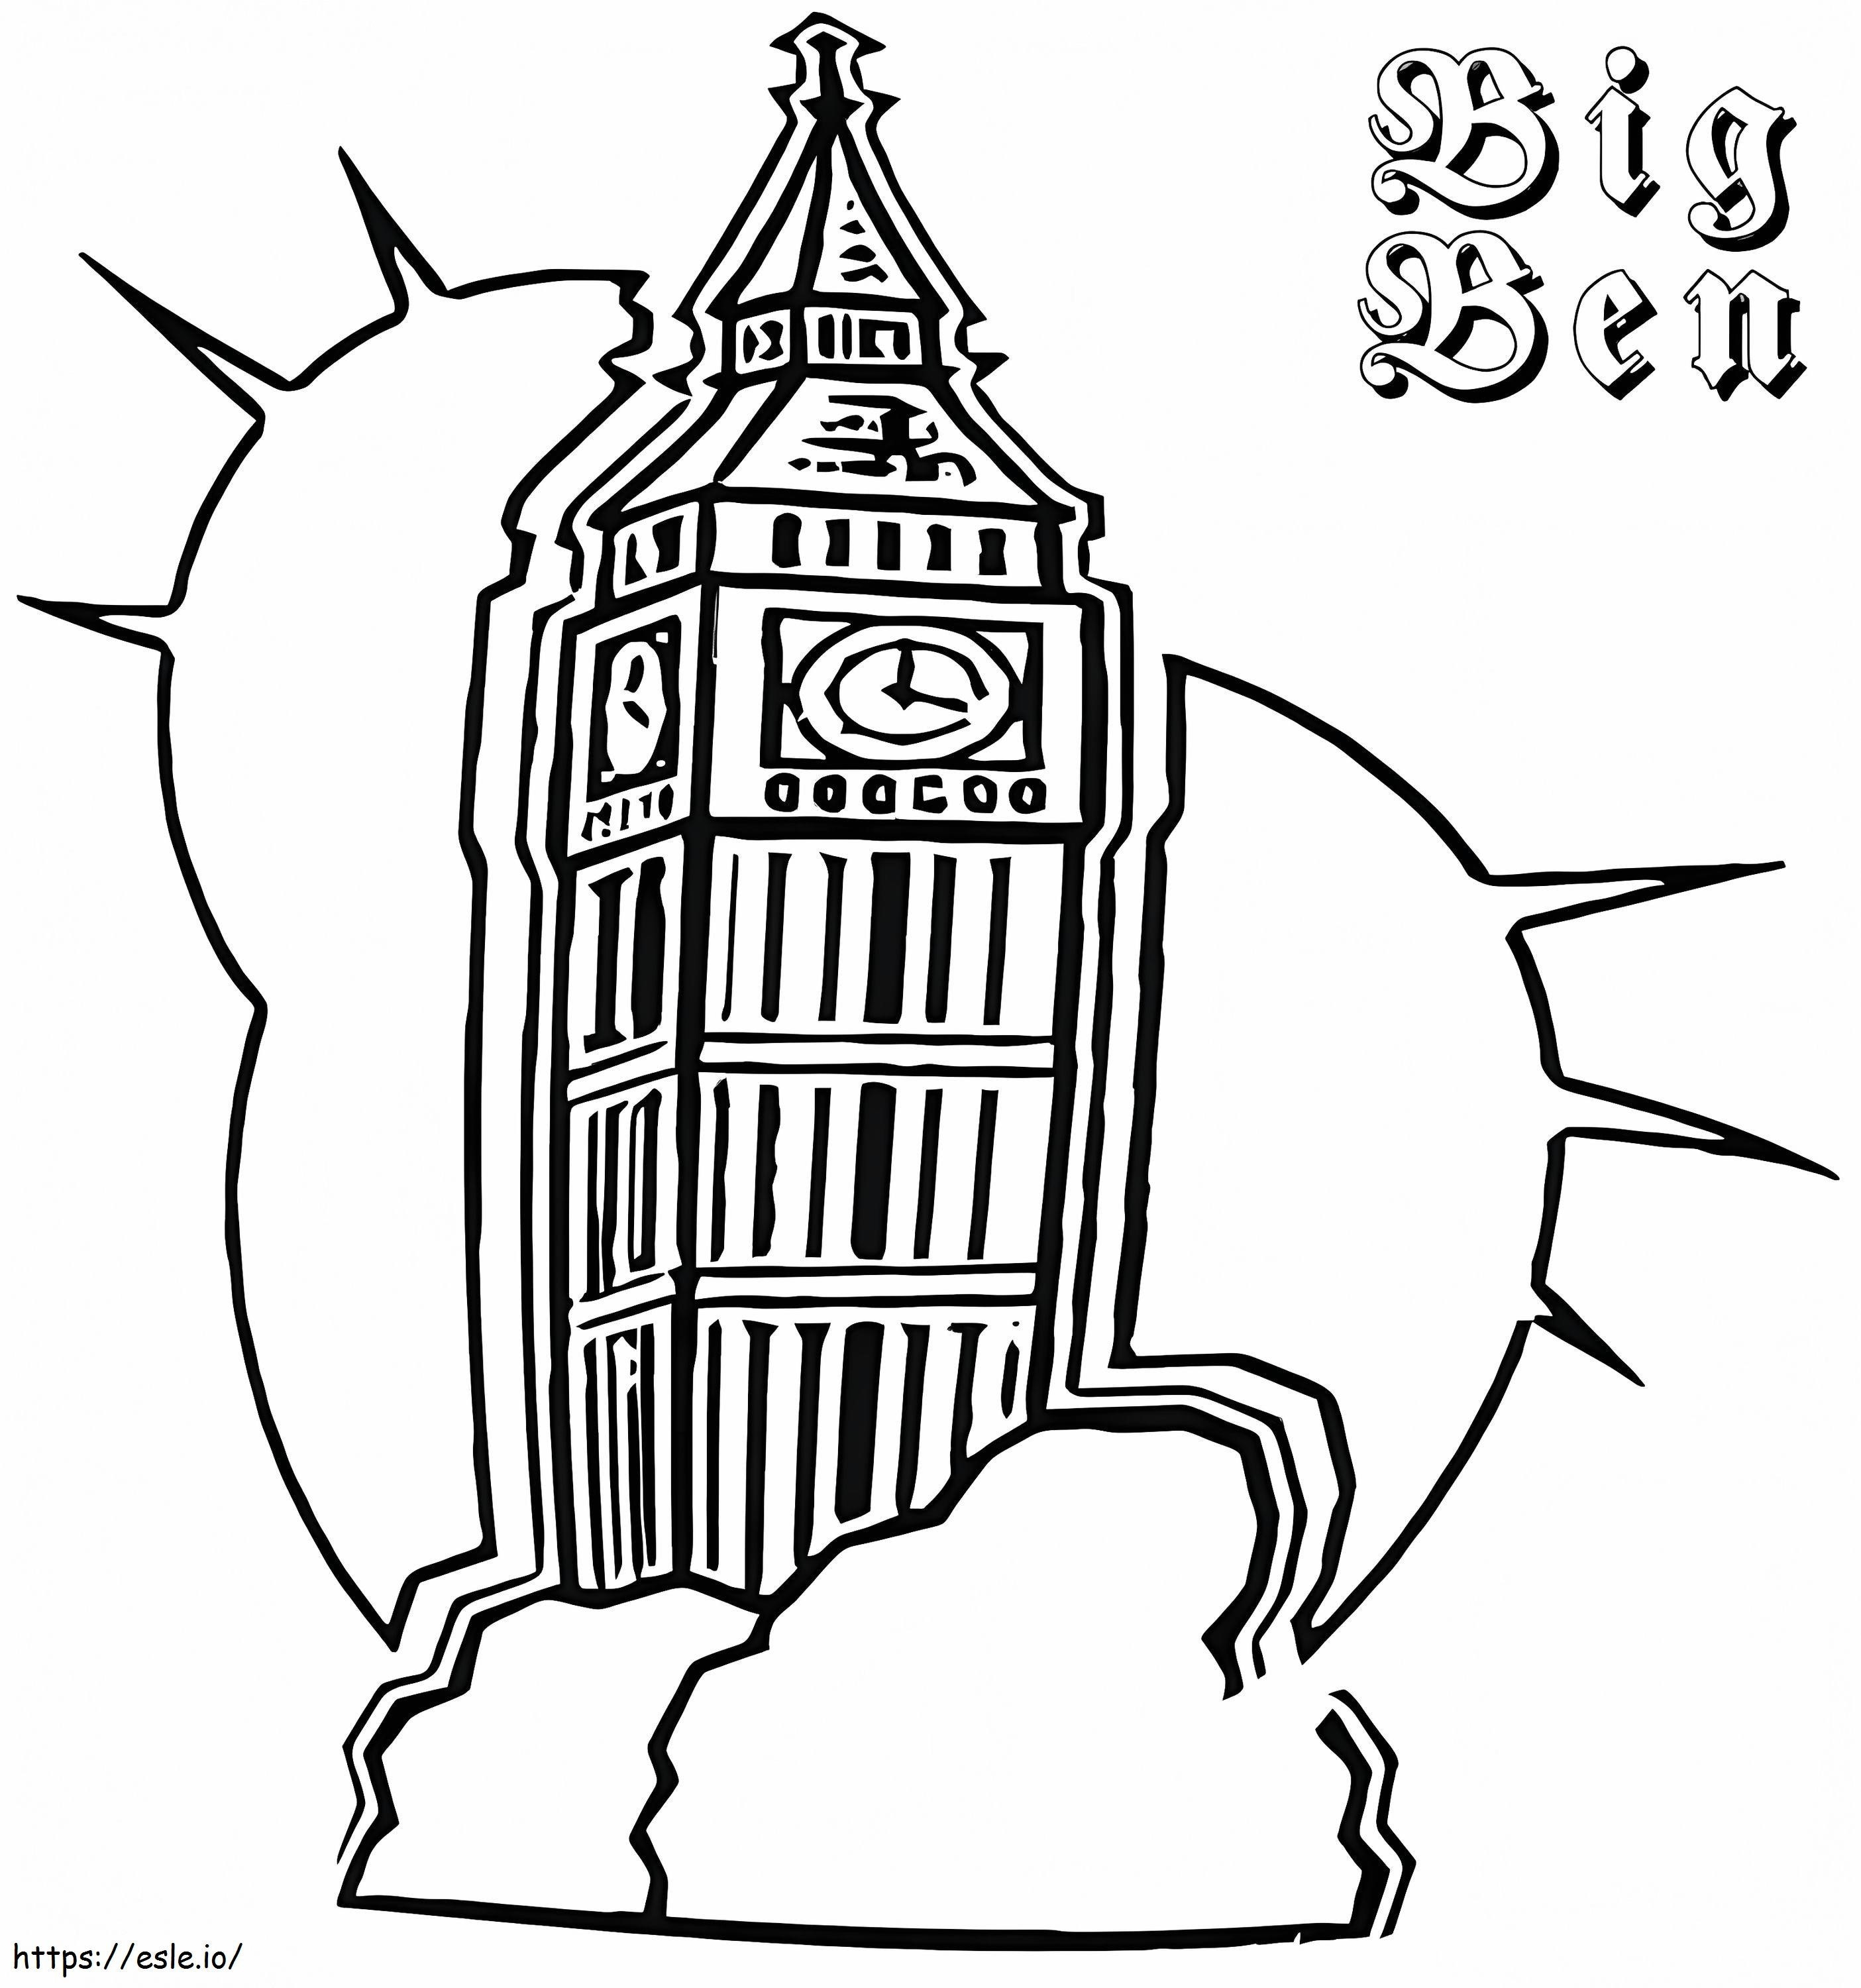 Big Ben 28 ausmalbilder